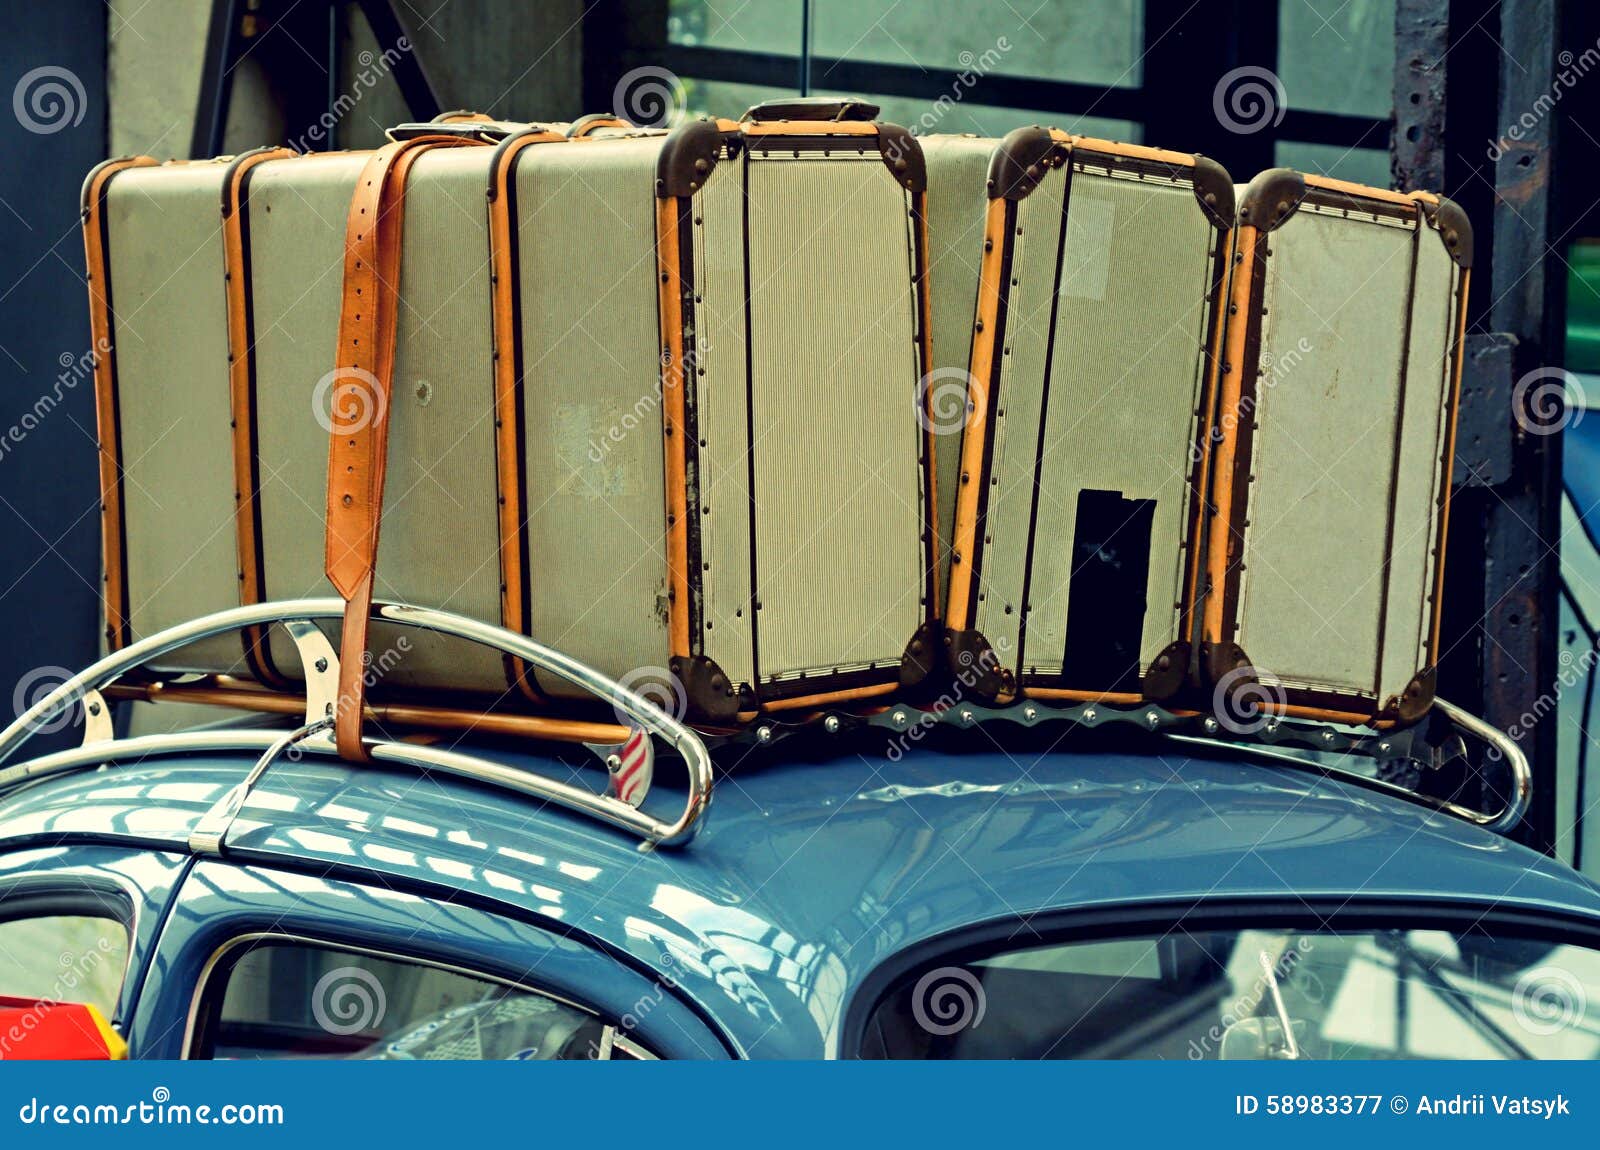 Dakraam Vleugels ijsje Koffers Op Een Bagagedrager Op Het Dak Van De Oude Auto Vinta Stock  Afbeelding - Image of reizen, auto: 58983377